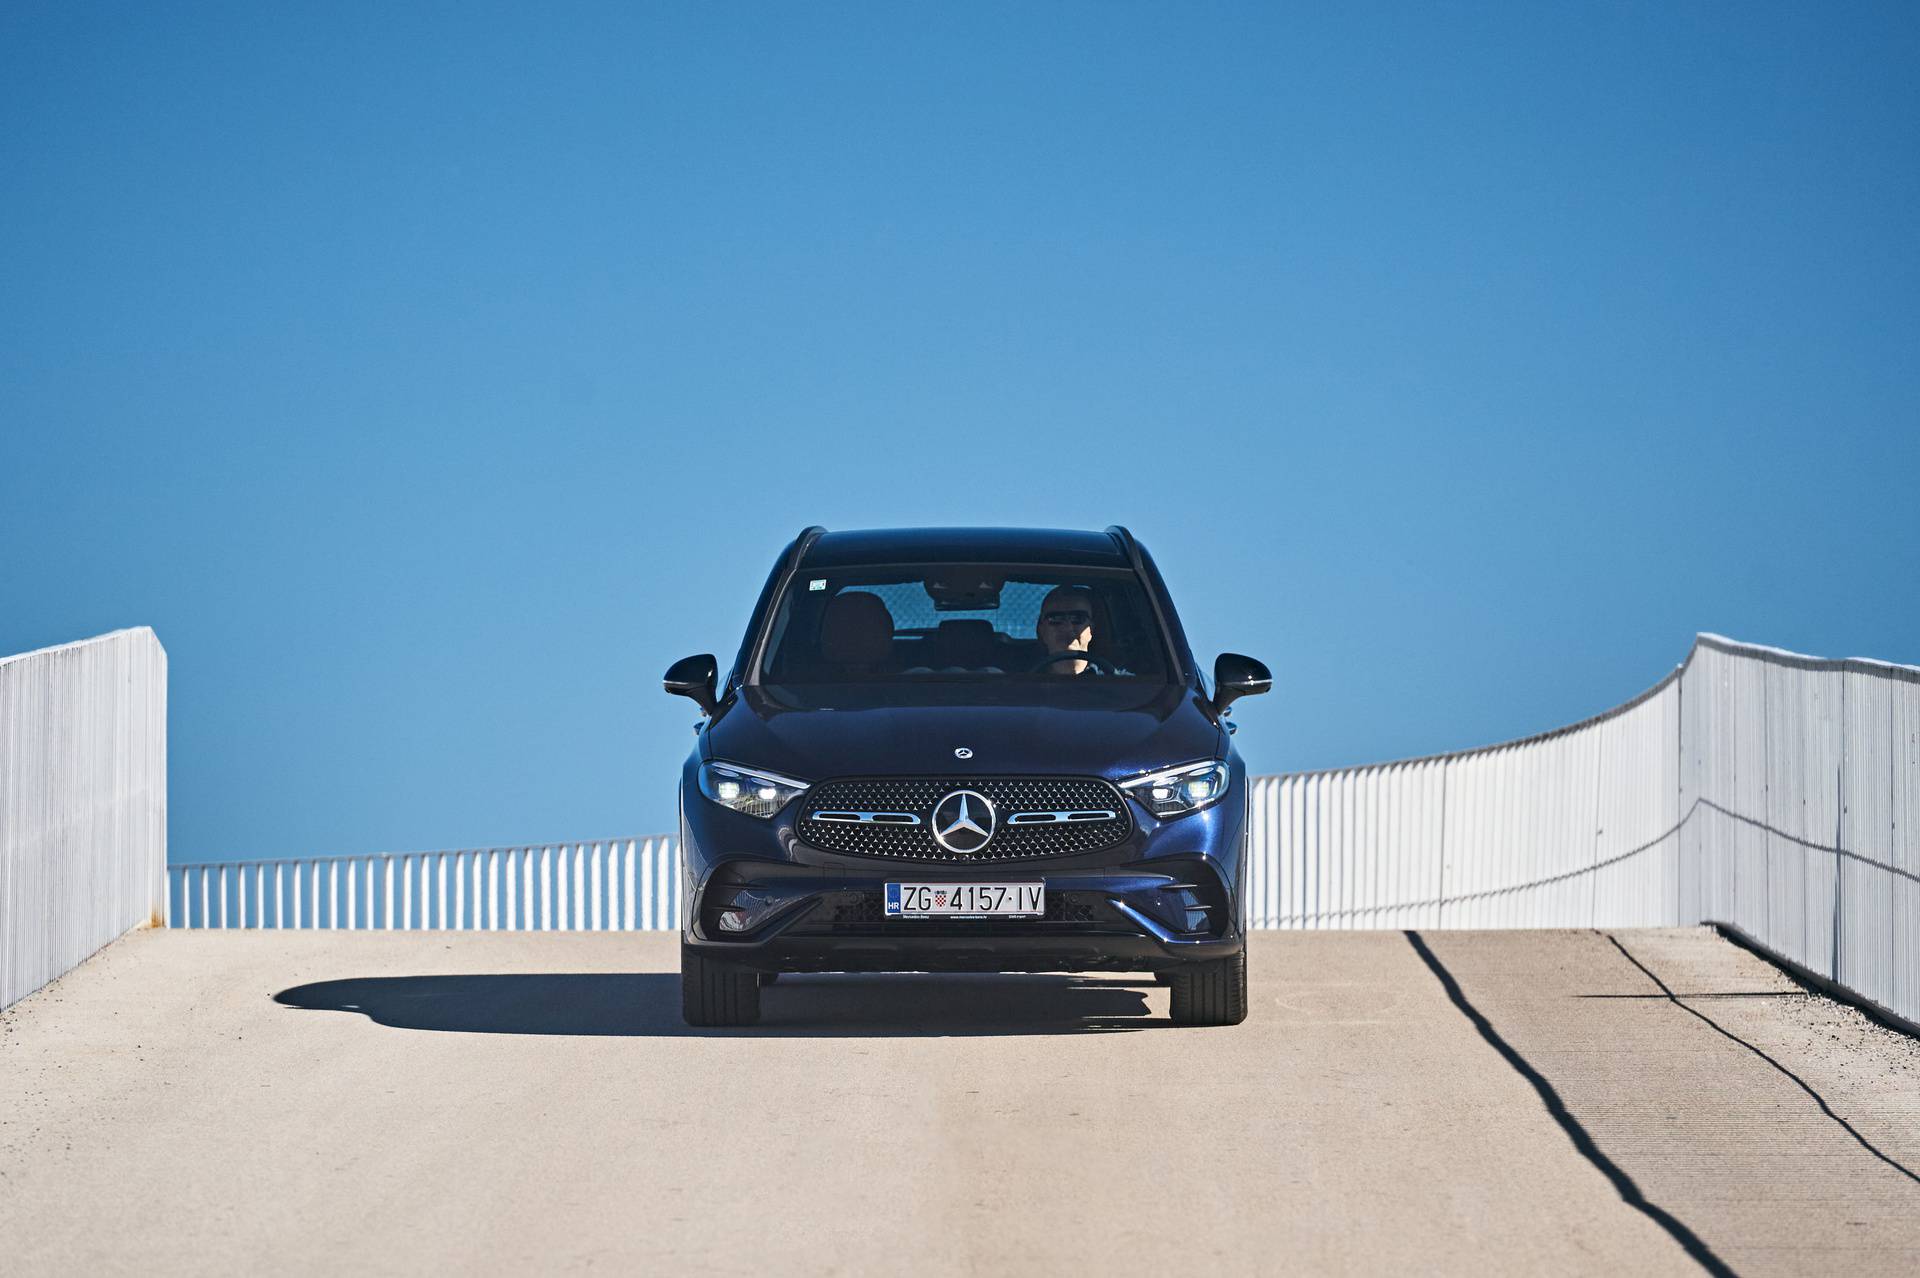 U Hrvatsku je Stigao novi GLC. Najprodavaniji Mercedes na tržištu ima mnoge nove adute